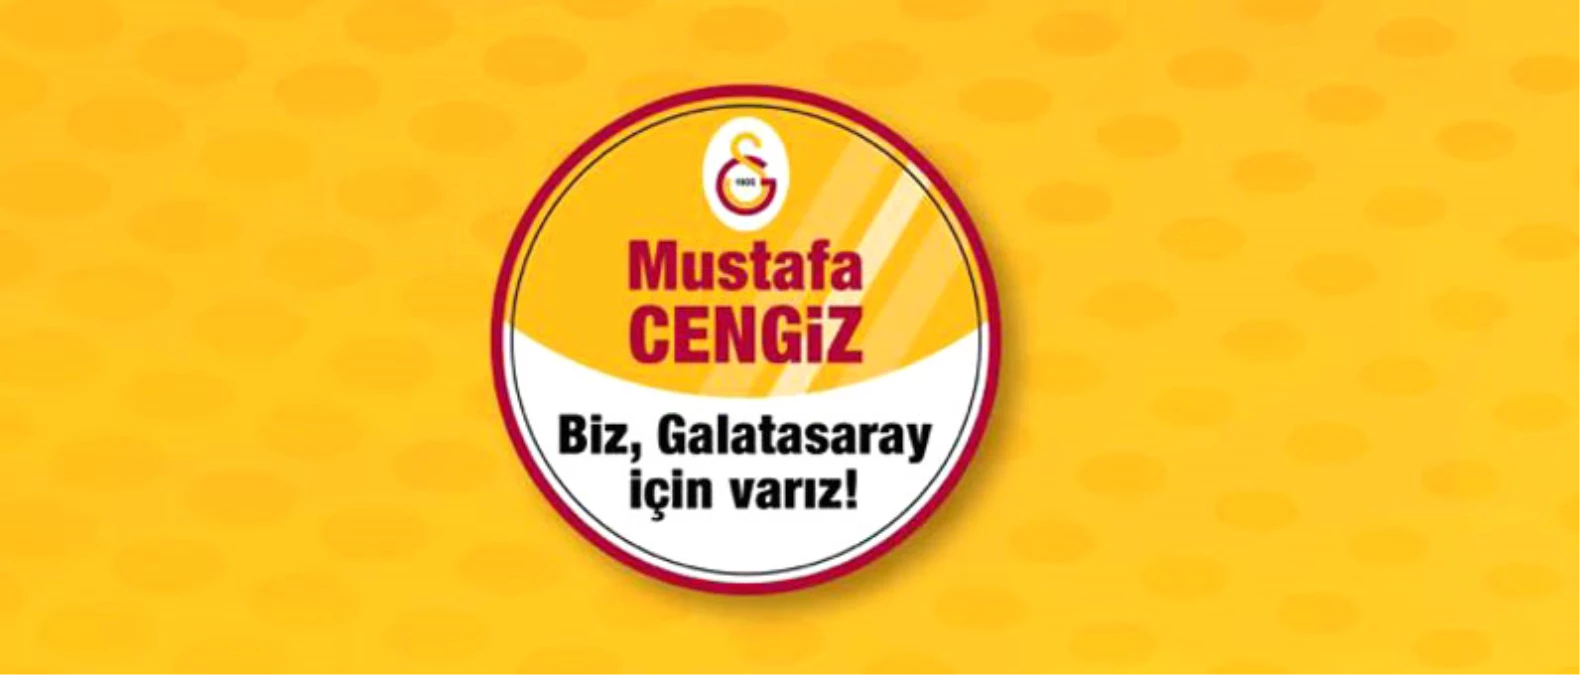 Galatasaray Spor Kulübü Başkan Adayı: "Mustafa Cengiz"